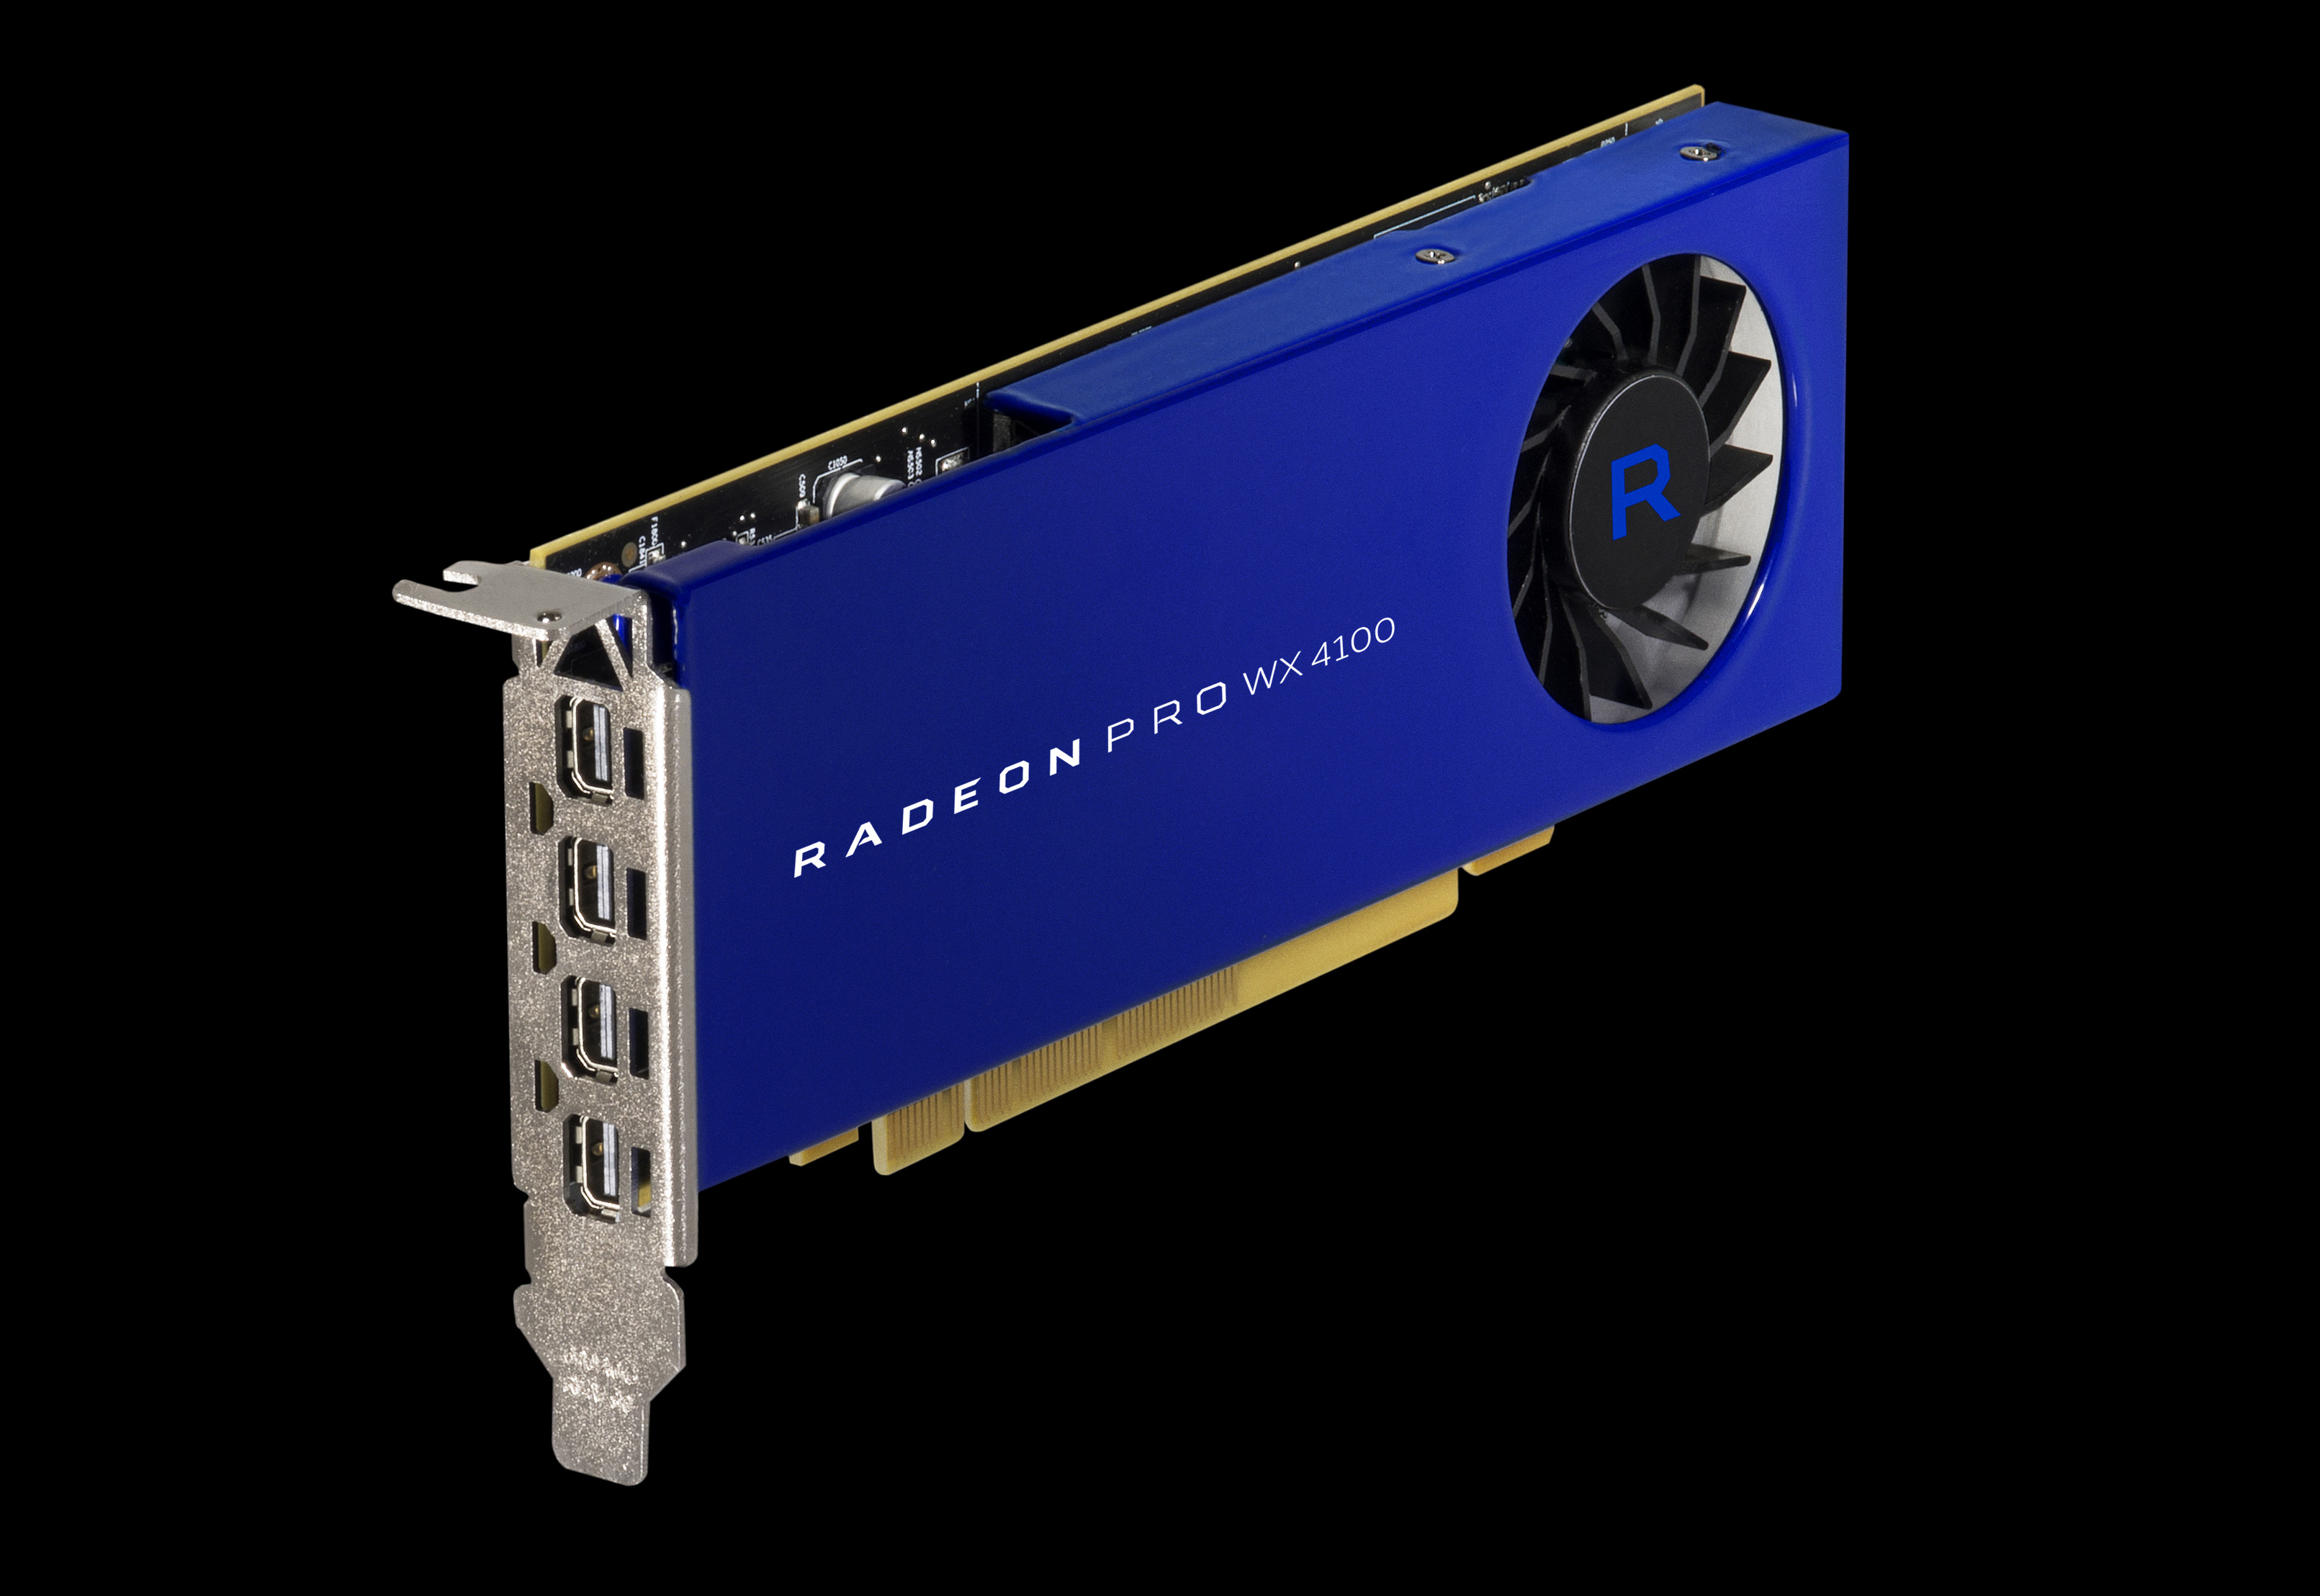 AMD Announces Radeon Pro WX Series: WX 4100, WX 5100, & WX 7100 